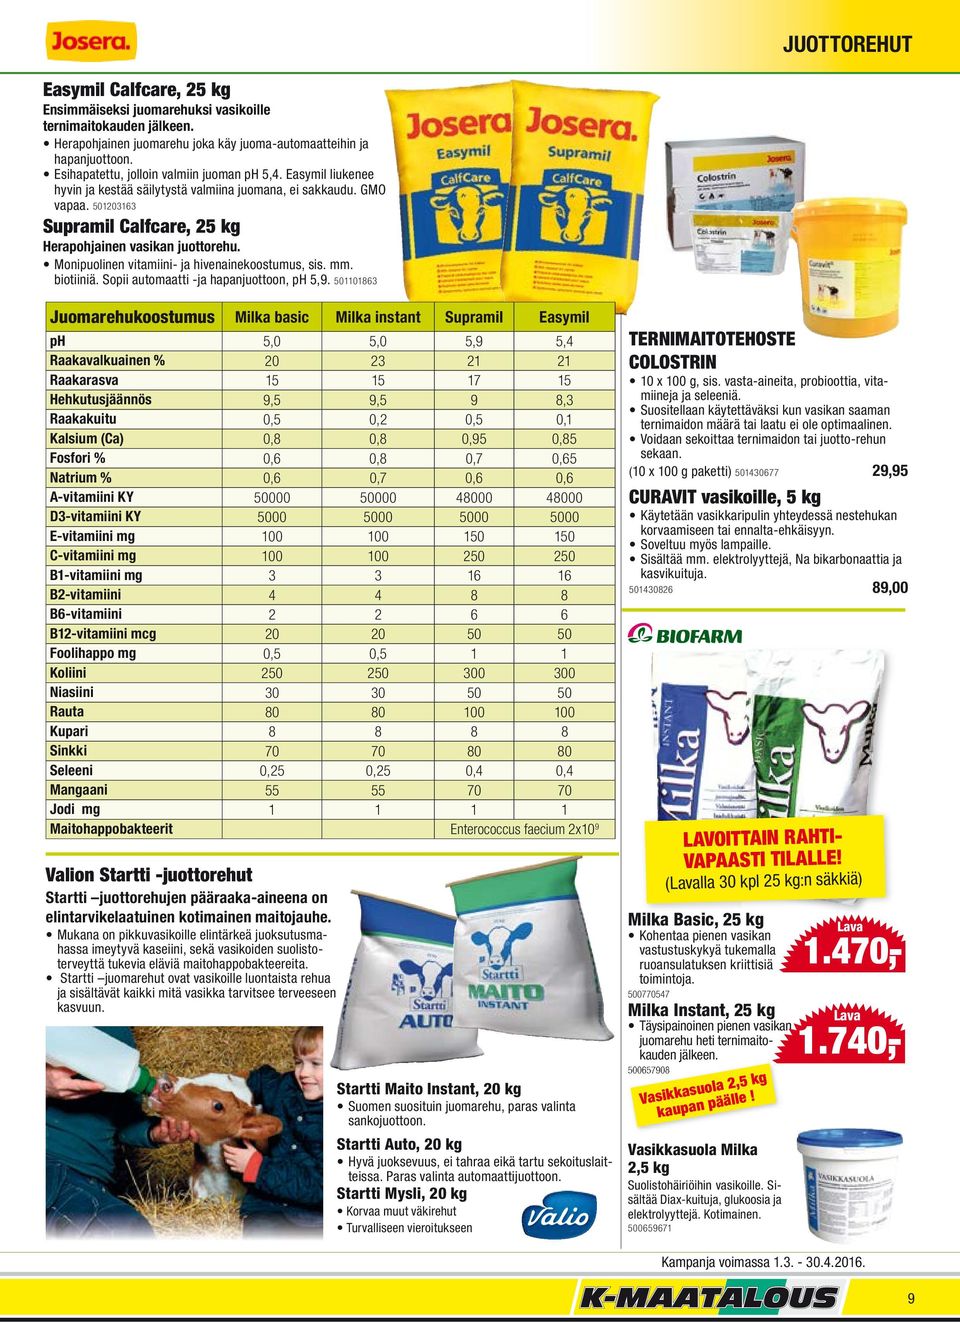 Monipuolinen vitamiini- ja hivenainekoostumus, sis. mm. biotiiniä. Sopii automaatti -ja hapanjuottoon, ph 5,9.